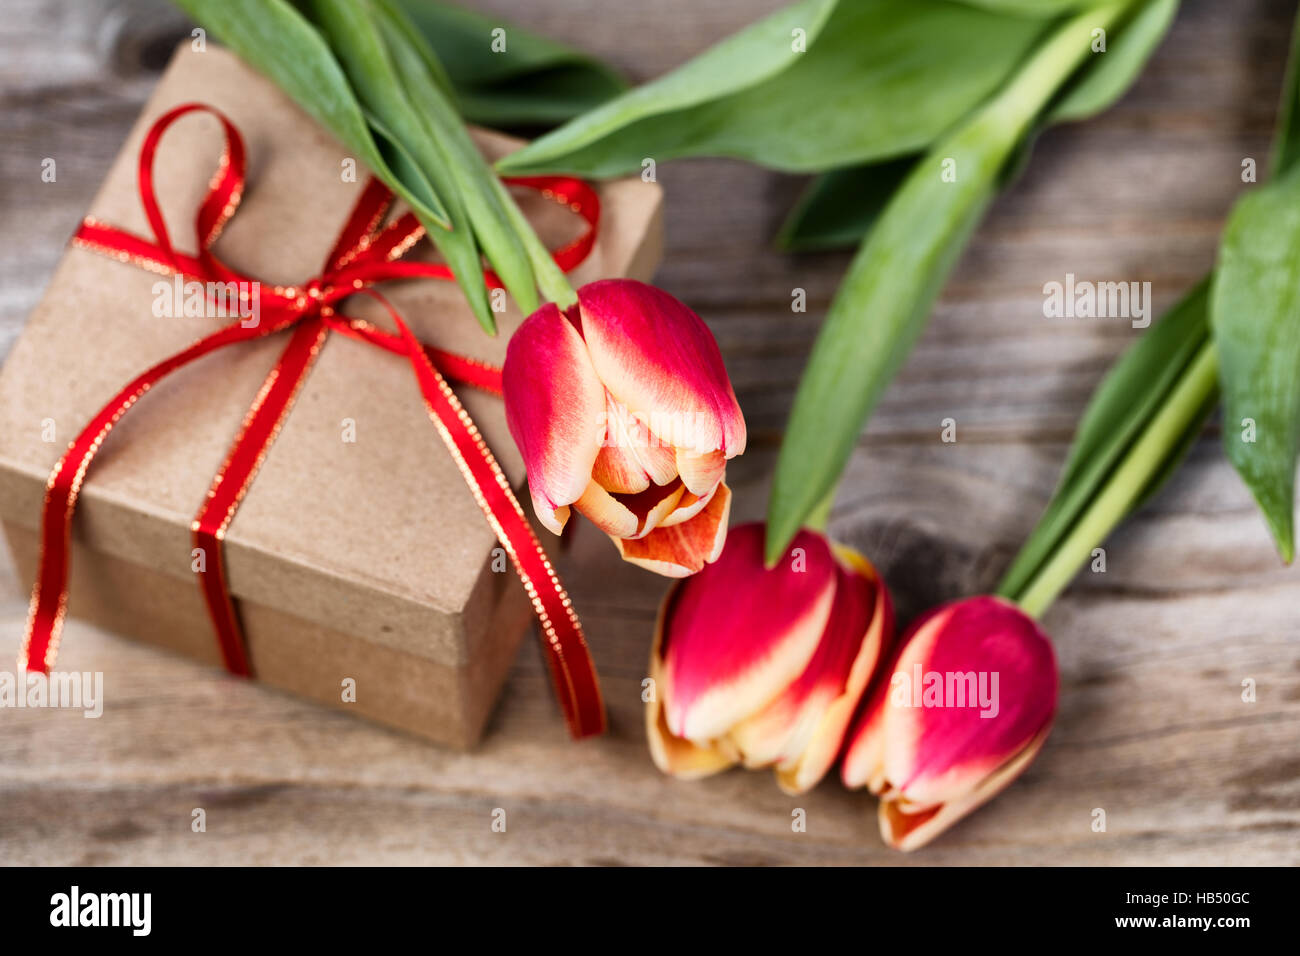 Les tulipes sur haut de cadeau en boîte Banque D'Images